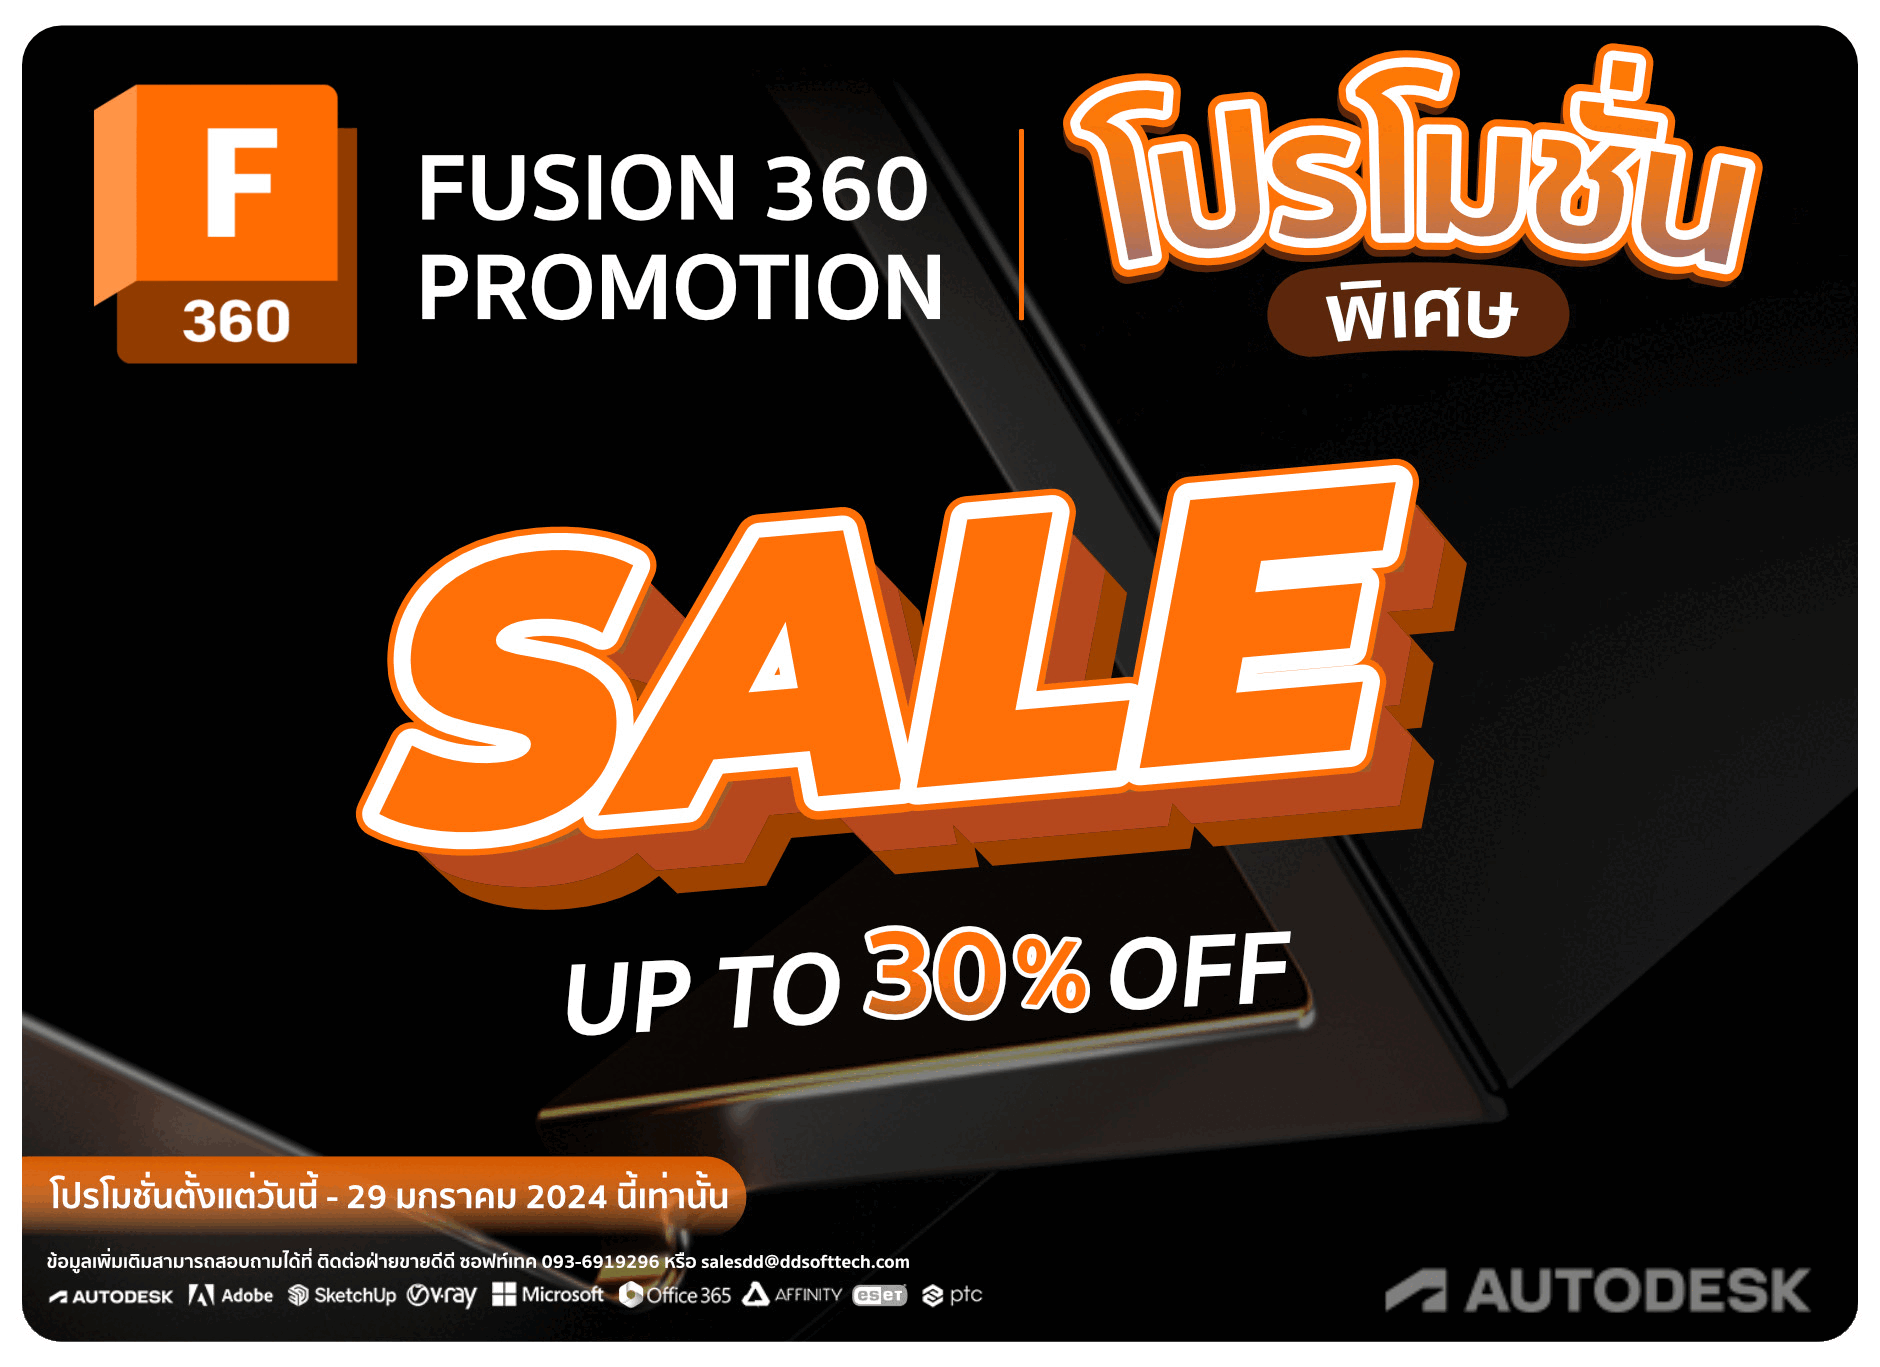 ⚡ โปรโมชั่นเดือนมกราคมมาแล้ว!  ซื้อ Autodesk Fusion 360 วันนี้ รับส่วนลดไปเลยทันที 30% ระยะเวลาโปรโมชั่นตั้งแต่วันนี้ – 29 มกราคม 2024 นี้เท่านั้น สอบถามรายละเอียดเพิ่มเติม ☎️ 093-6919296 ✉️ salesdd@ddsofttech.com  www.ddsofttech.com